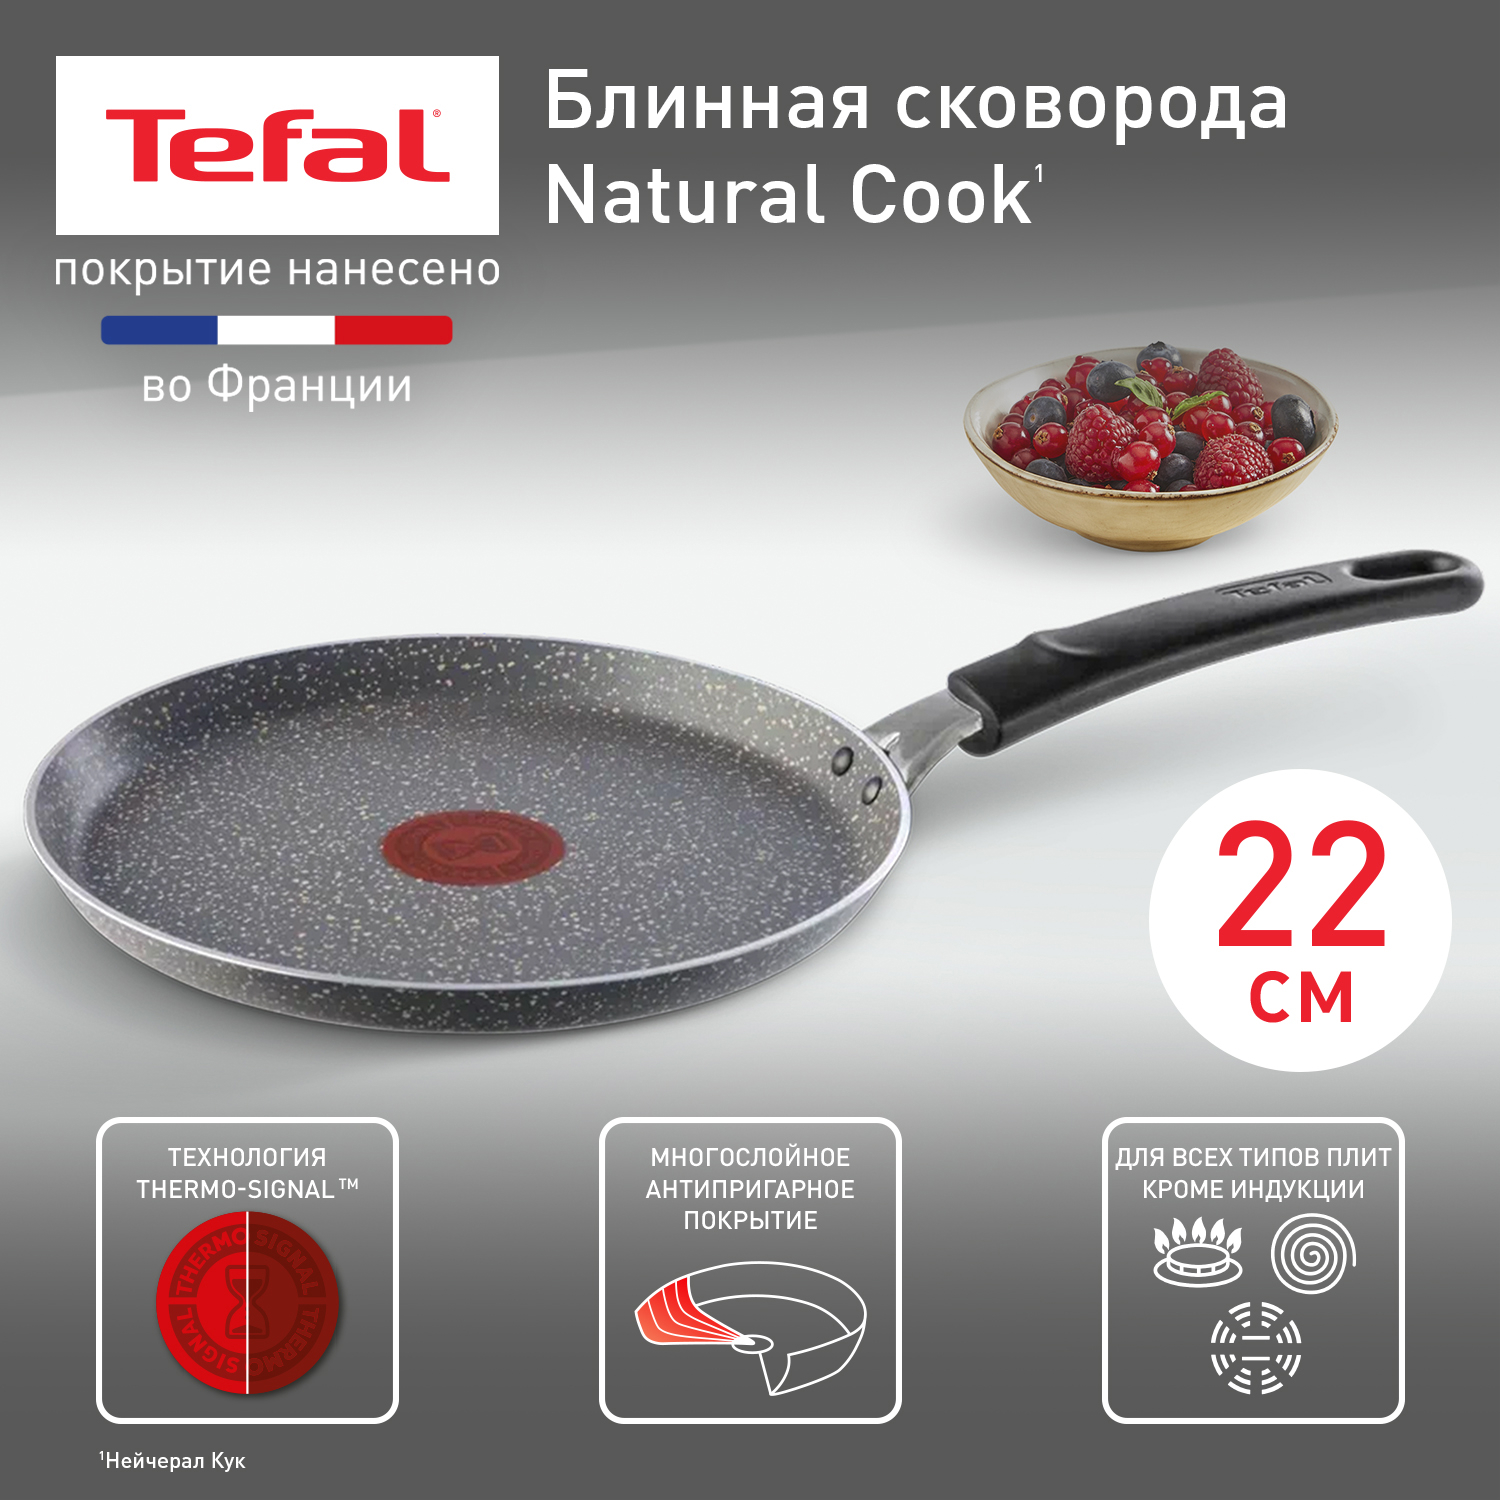 Сковорода для блинов Tefal Natural Cook 04213522, 22 см, антипригарное покрытие